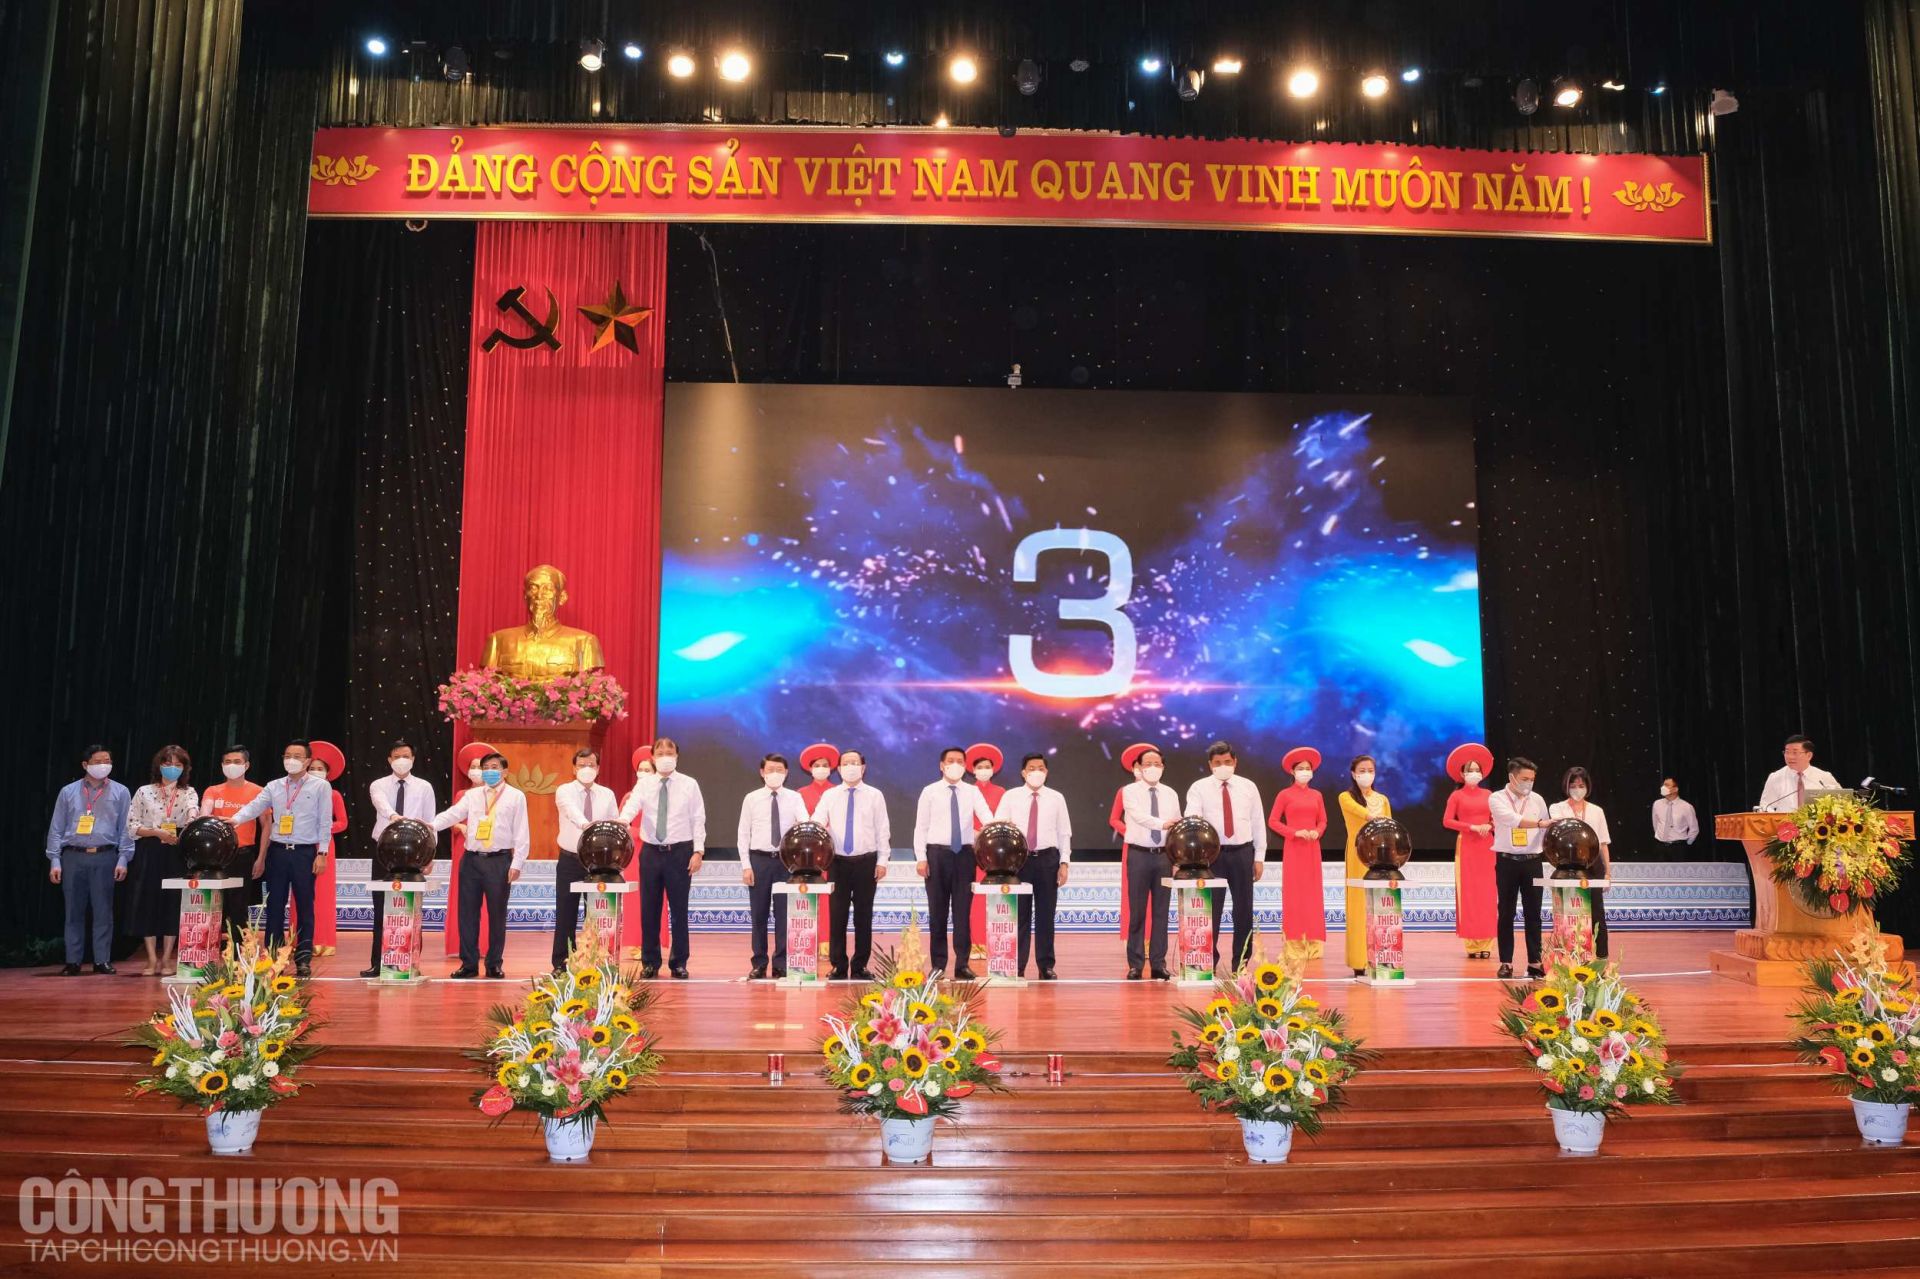 Nghi lễ Khai trương “Gian hàng vải thiều trên sàn Alibaba.com và các sàn thương mại điện tử” trong khuôn khổ Hội nghị trực tuyến Xúc tiến tiêu thụ vải thiều tỉnh Bắc Giang năm 2021